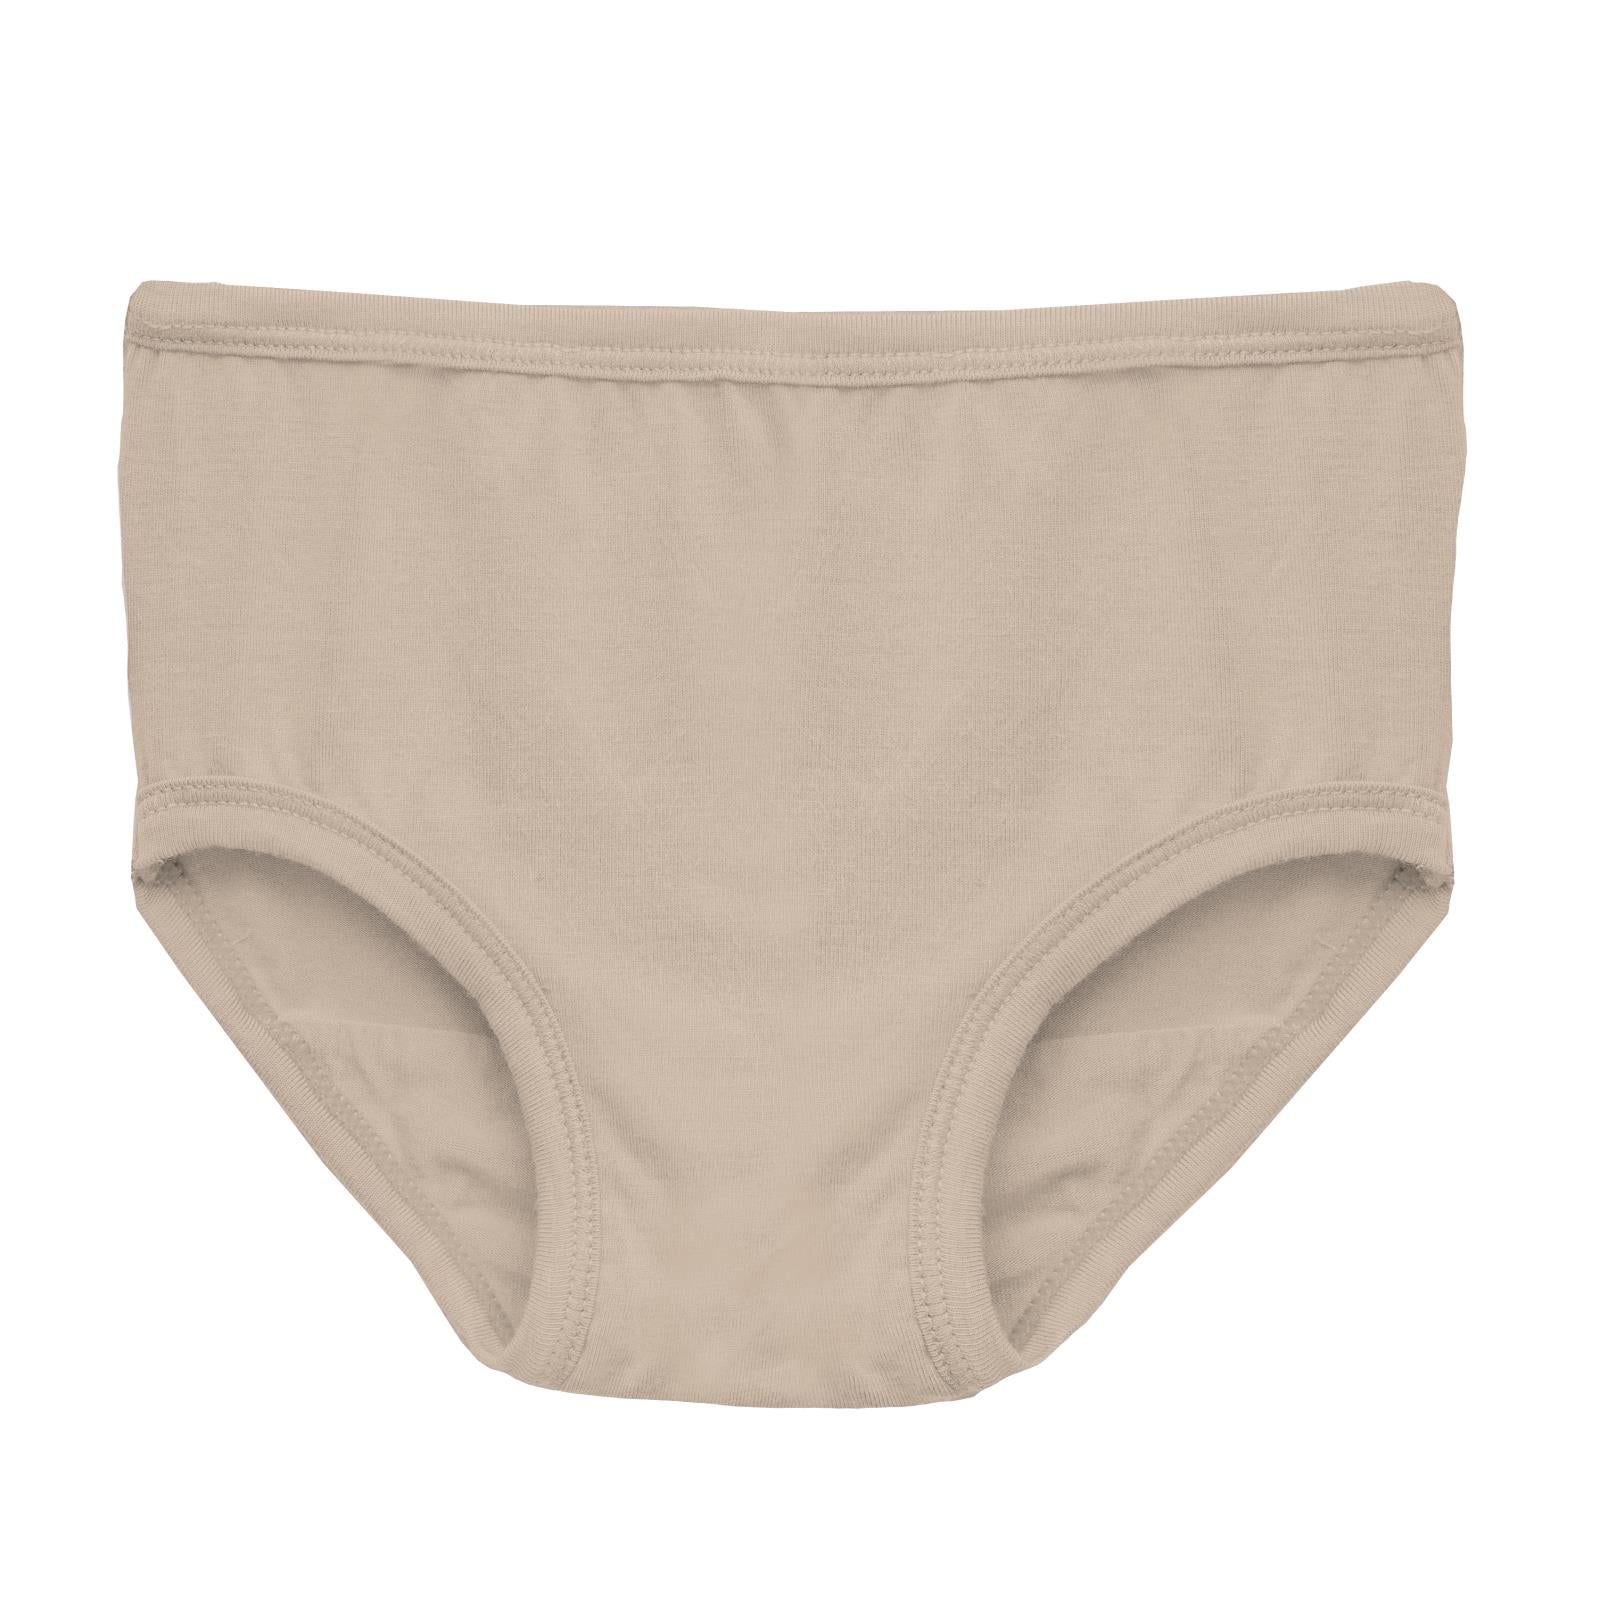 Laura Ashley Underwear Tj Maxx Savings